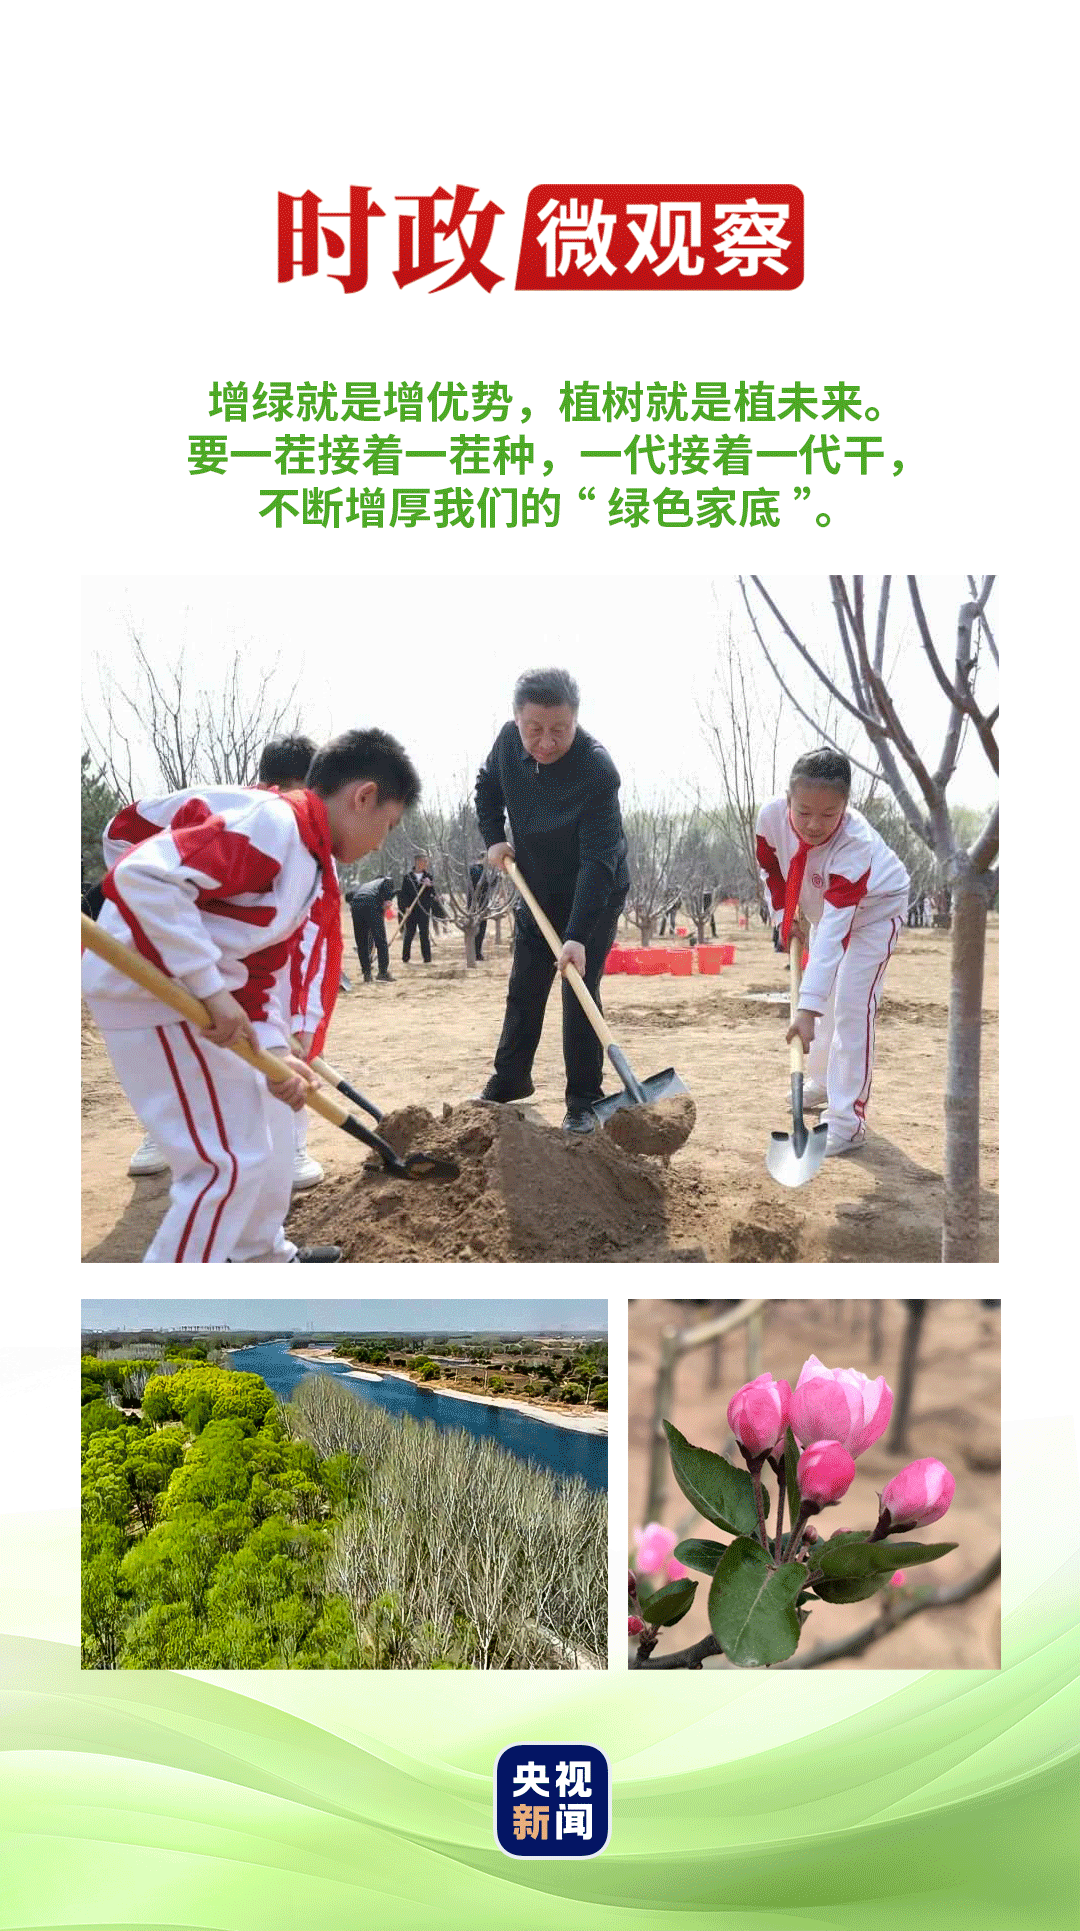 柳绿、花红、水碧，京郊潞城镇，潮白河畔春意盎然。正是植树的好时节！